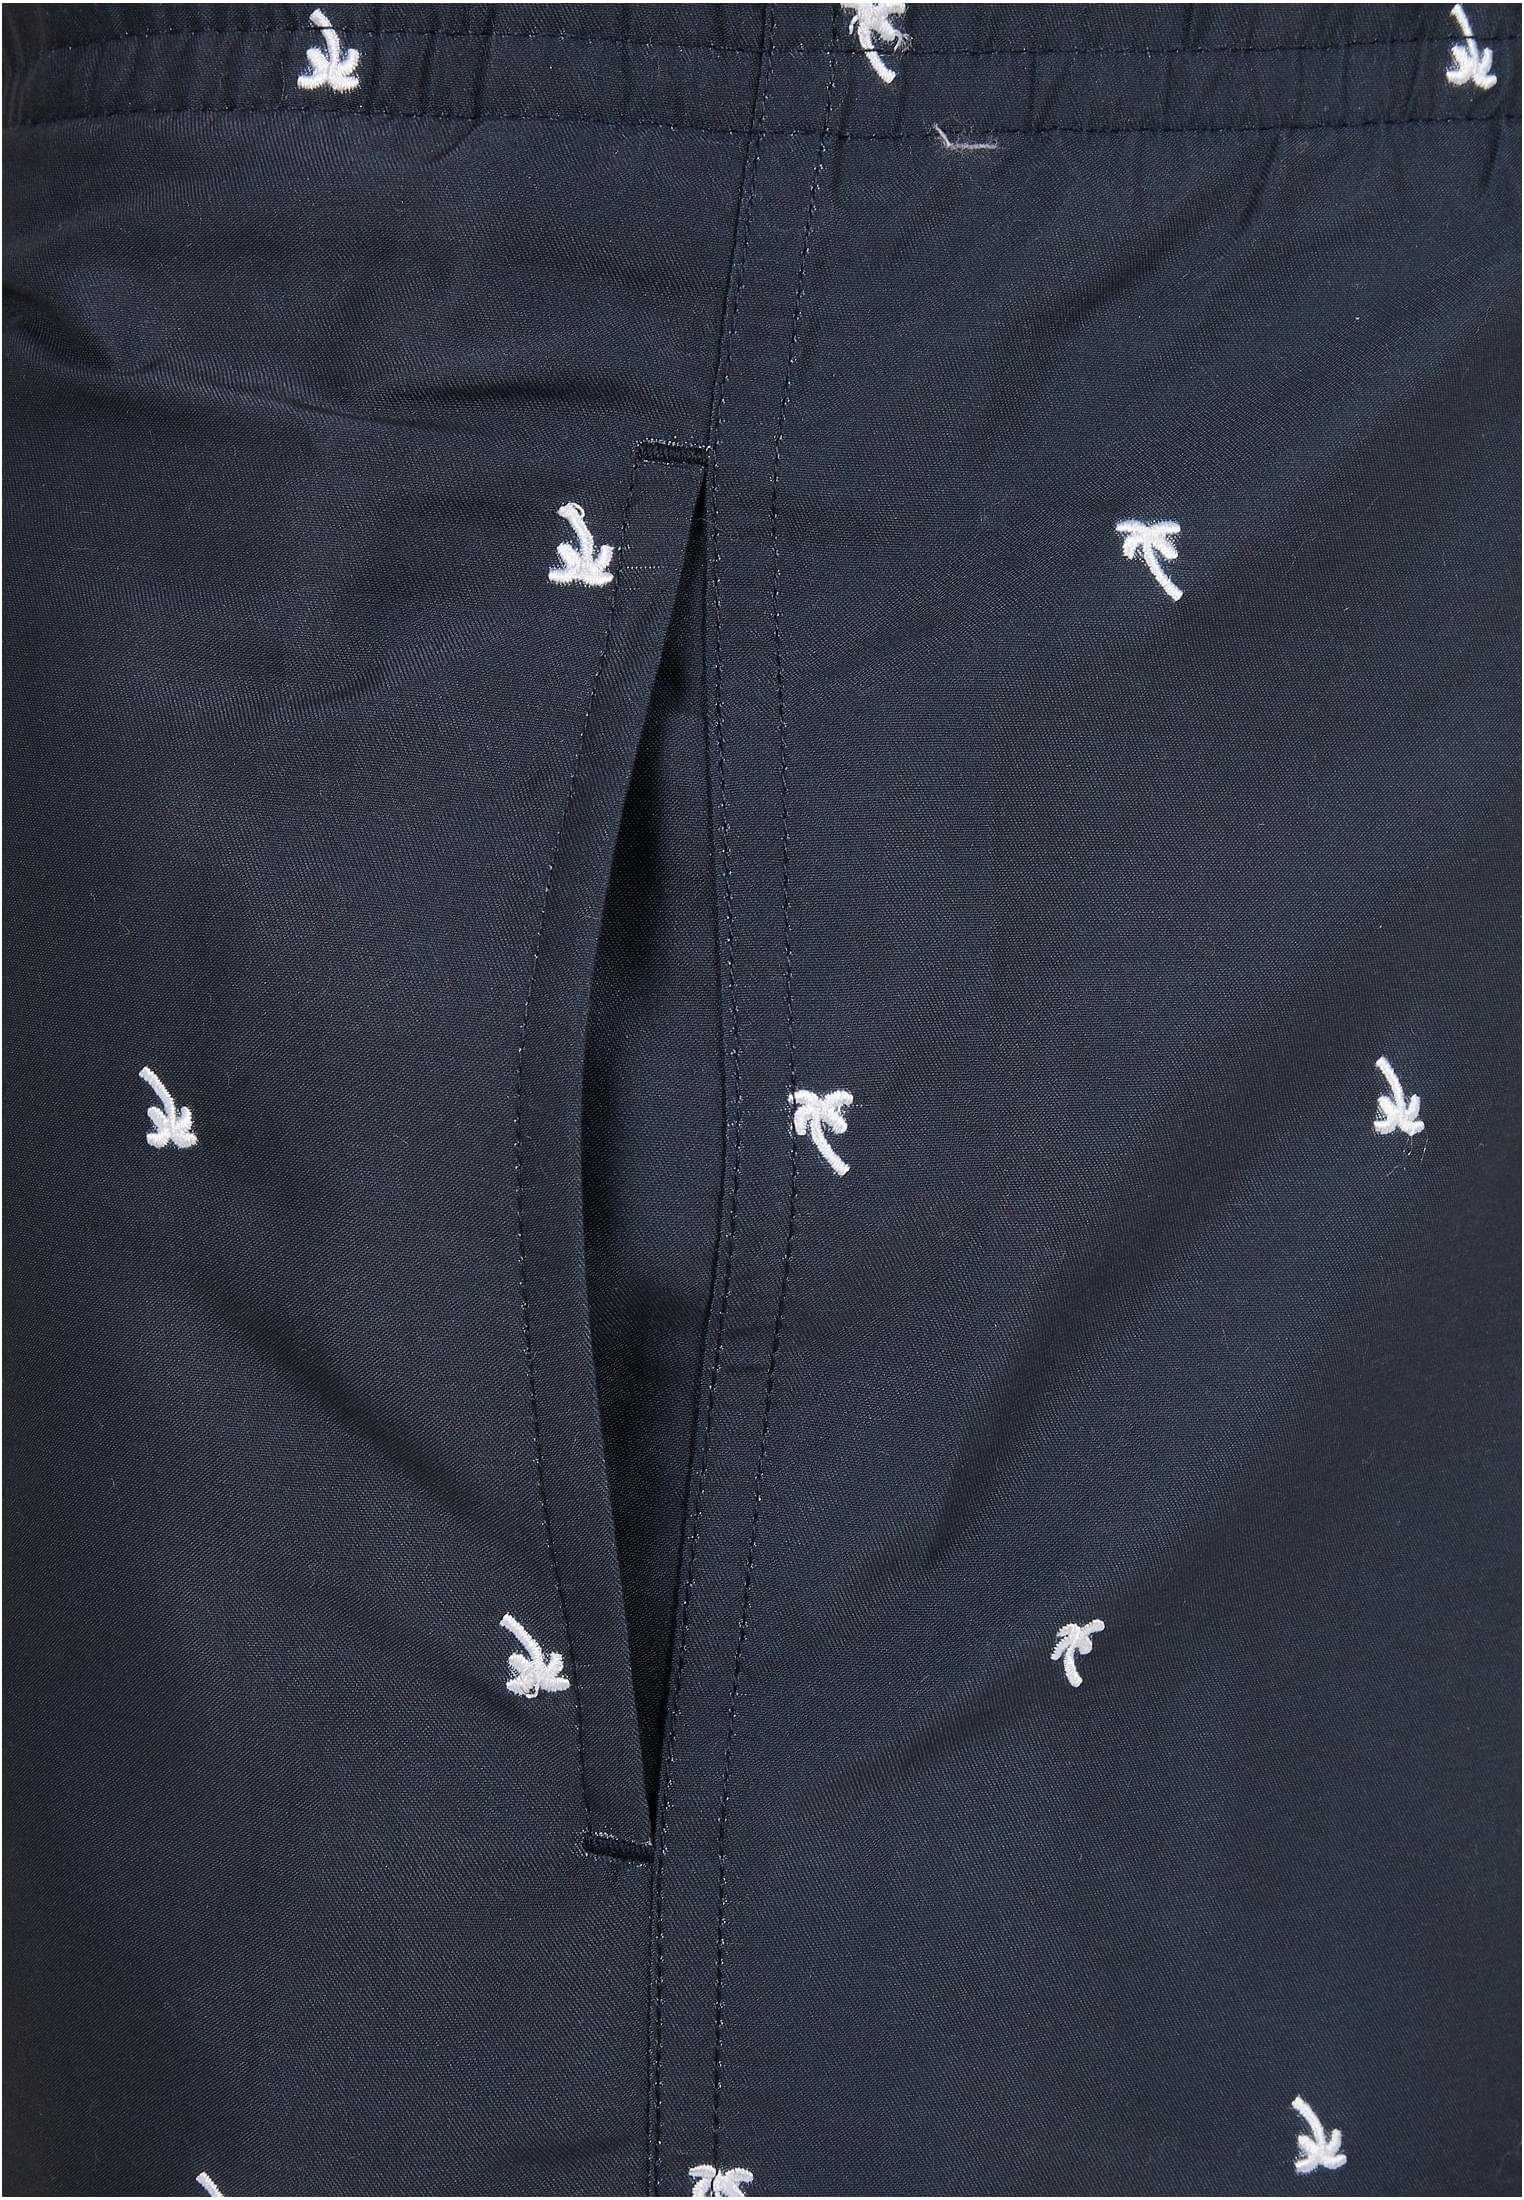 CLASSICS Embroidery Herren Swim Shorts Badeshorts URBAN palmtree/midnighnavy/white